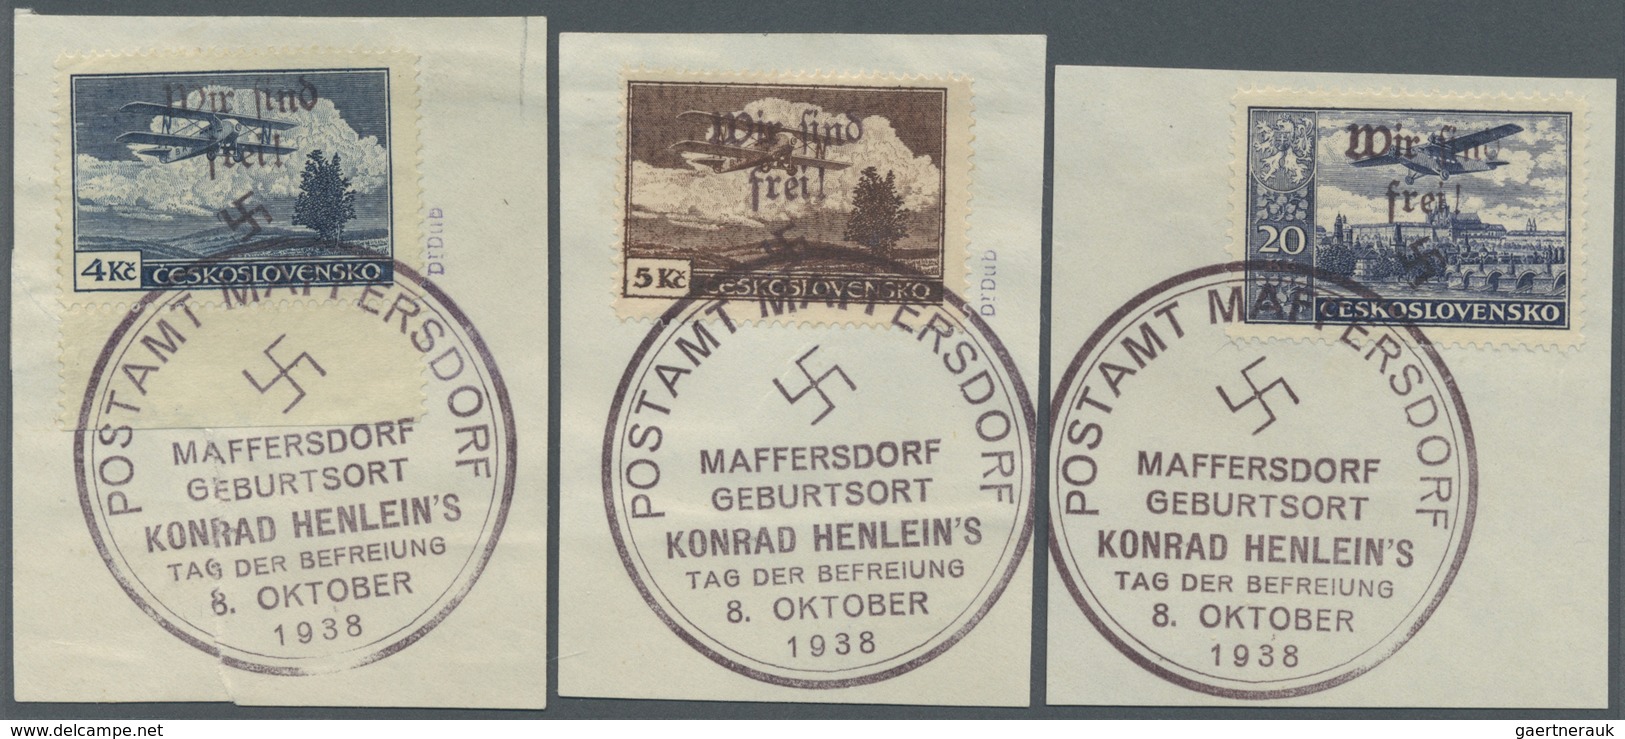 Brfst Sudetenland - Maffersdorf: 1938, 50 H. Bis 20 Kc. Flugpost, Kompletter Satz Auf Acht Briefstücken, B - Sudetenland